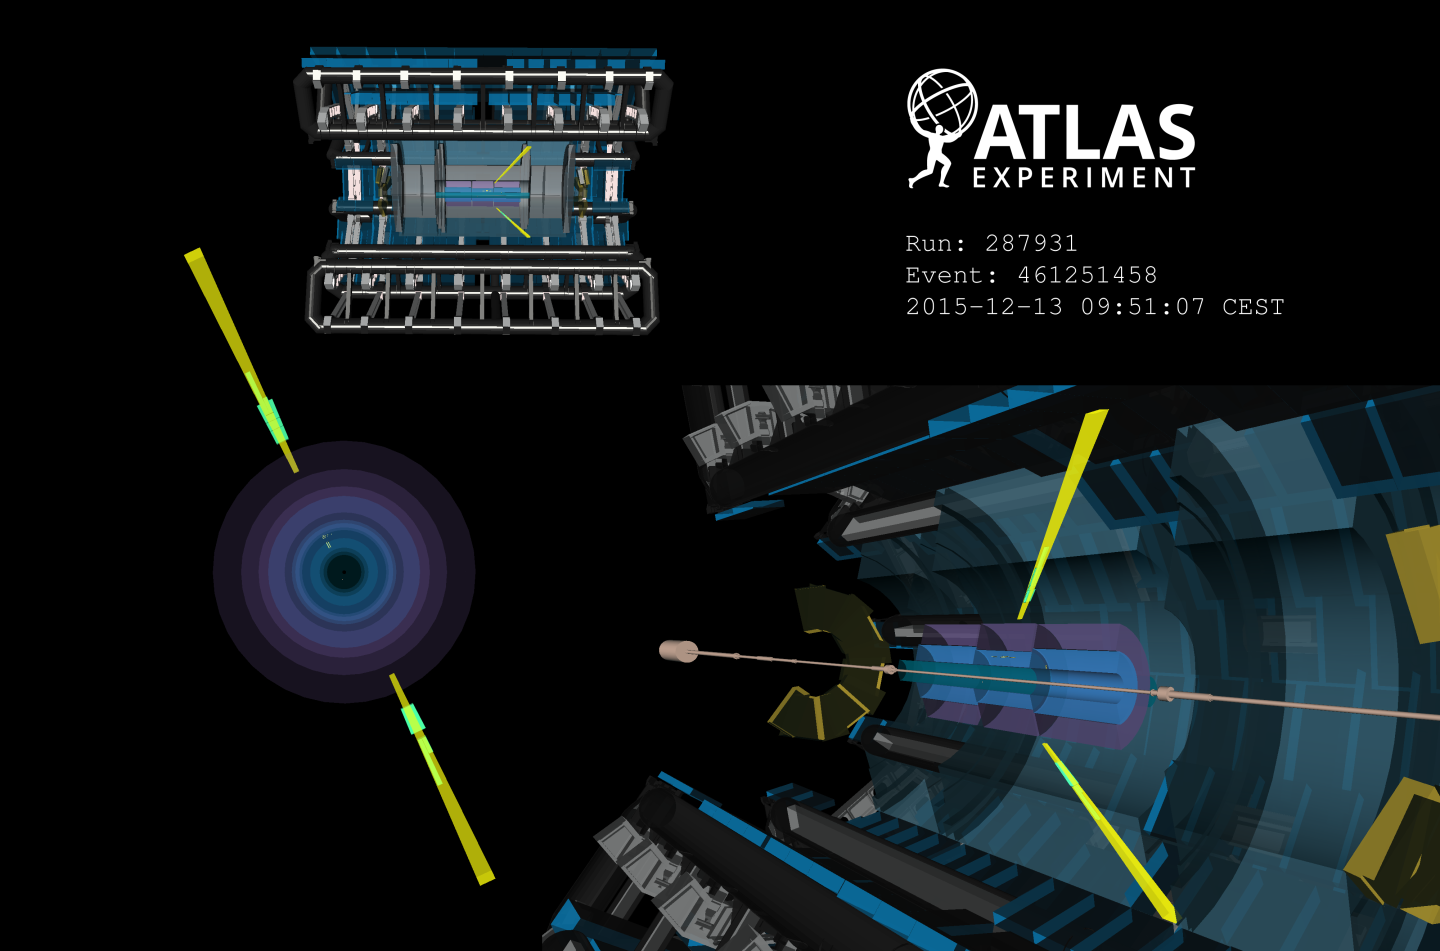 Acontecimiento candidato a la diffusion de la luz-luz observada en el detector ATLAS. Imagen: ATLAS/CERN)